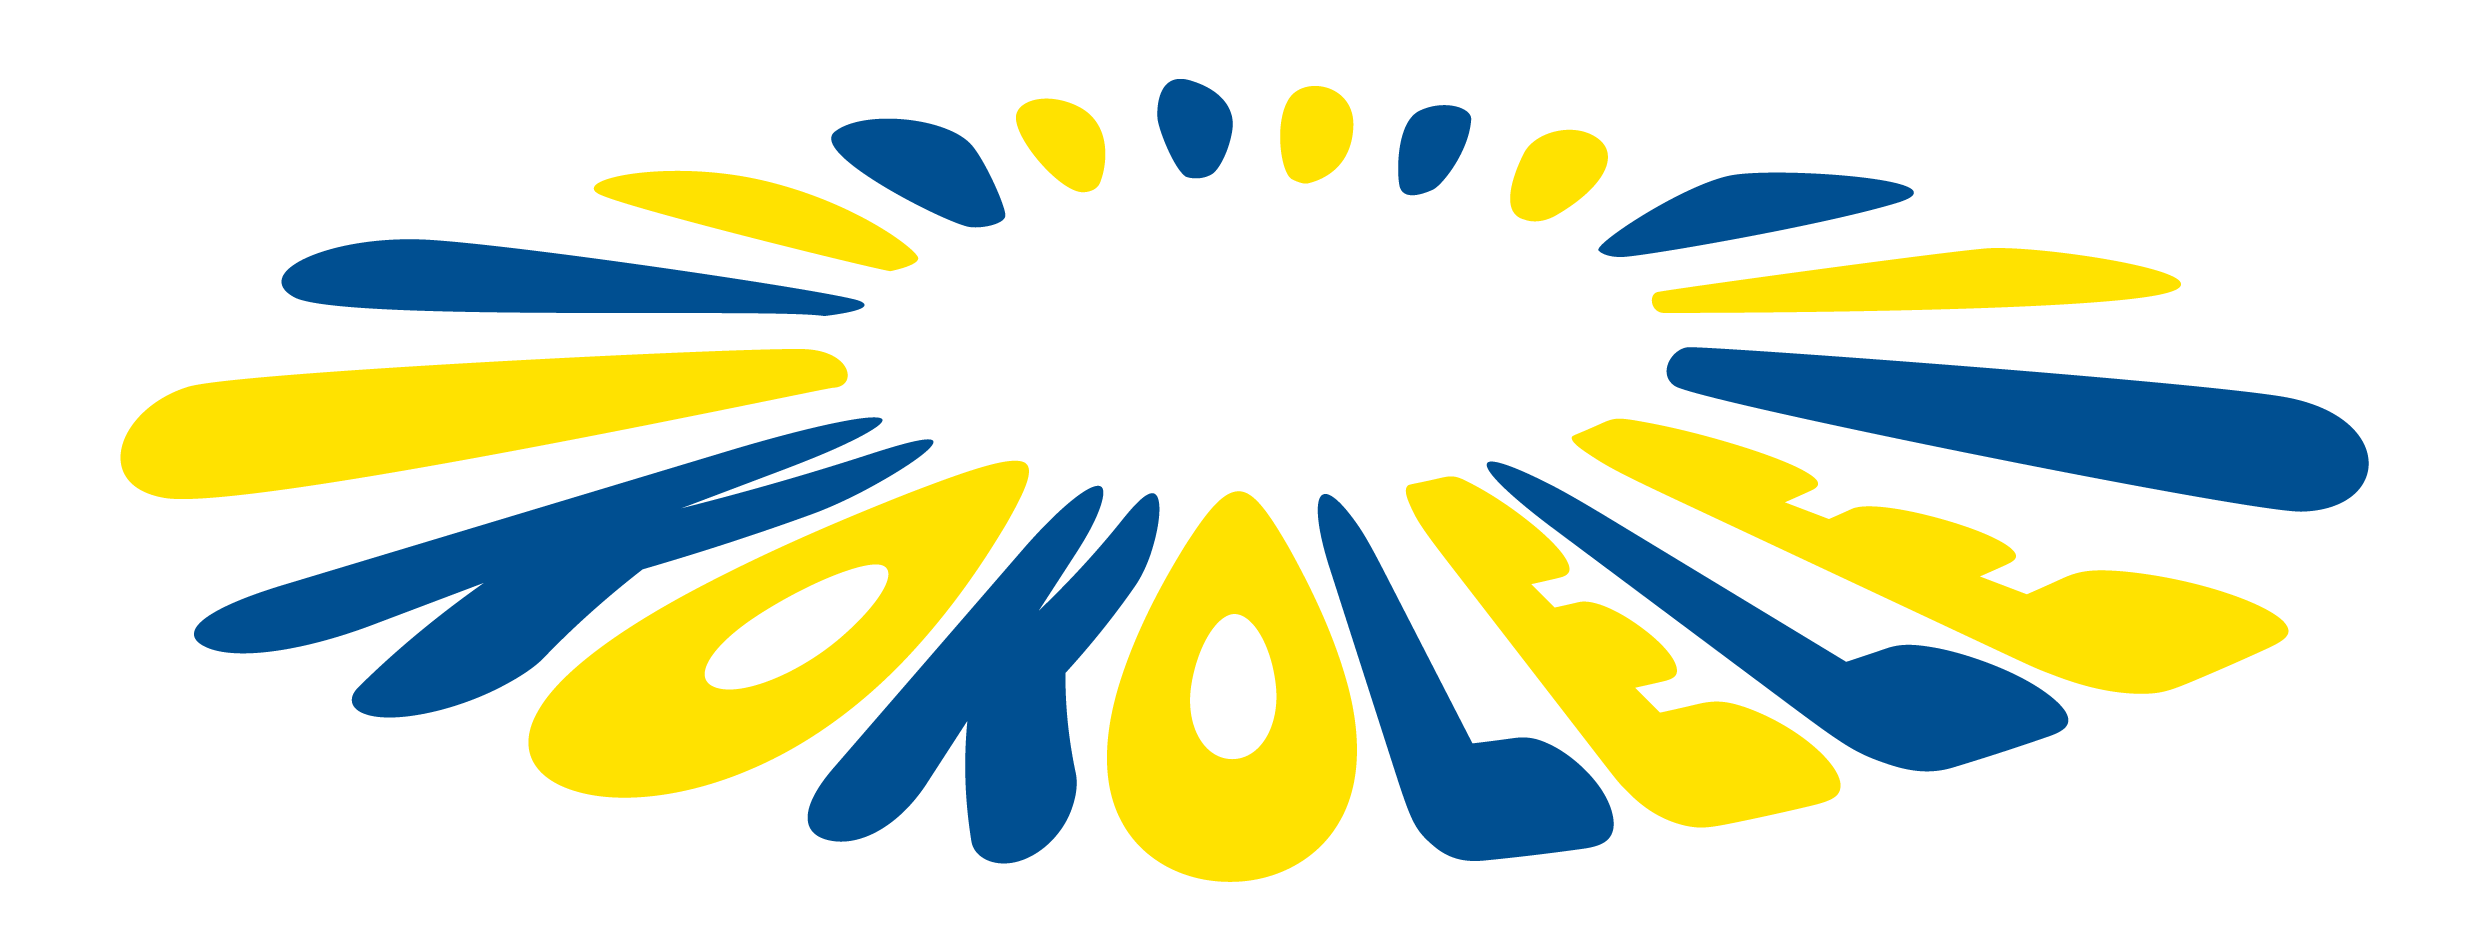 Logo-Verein